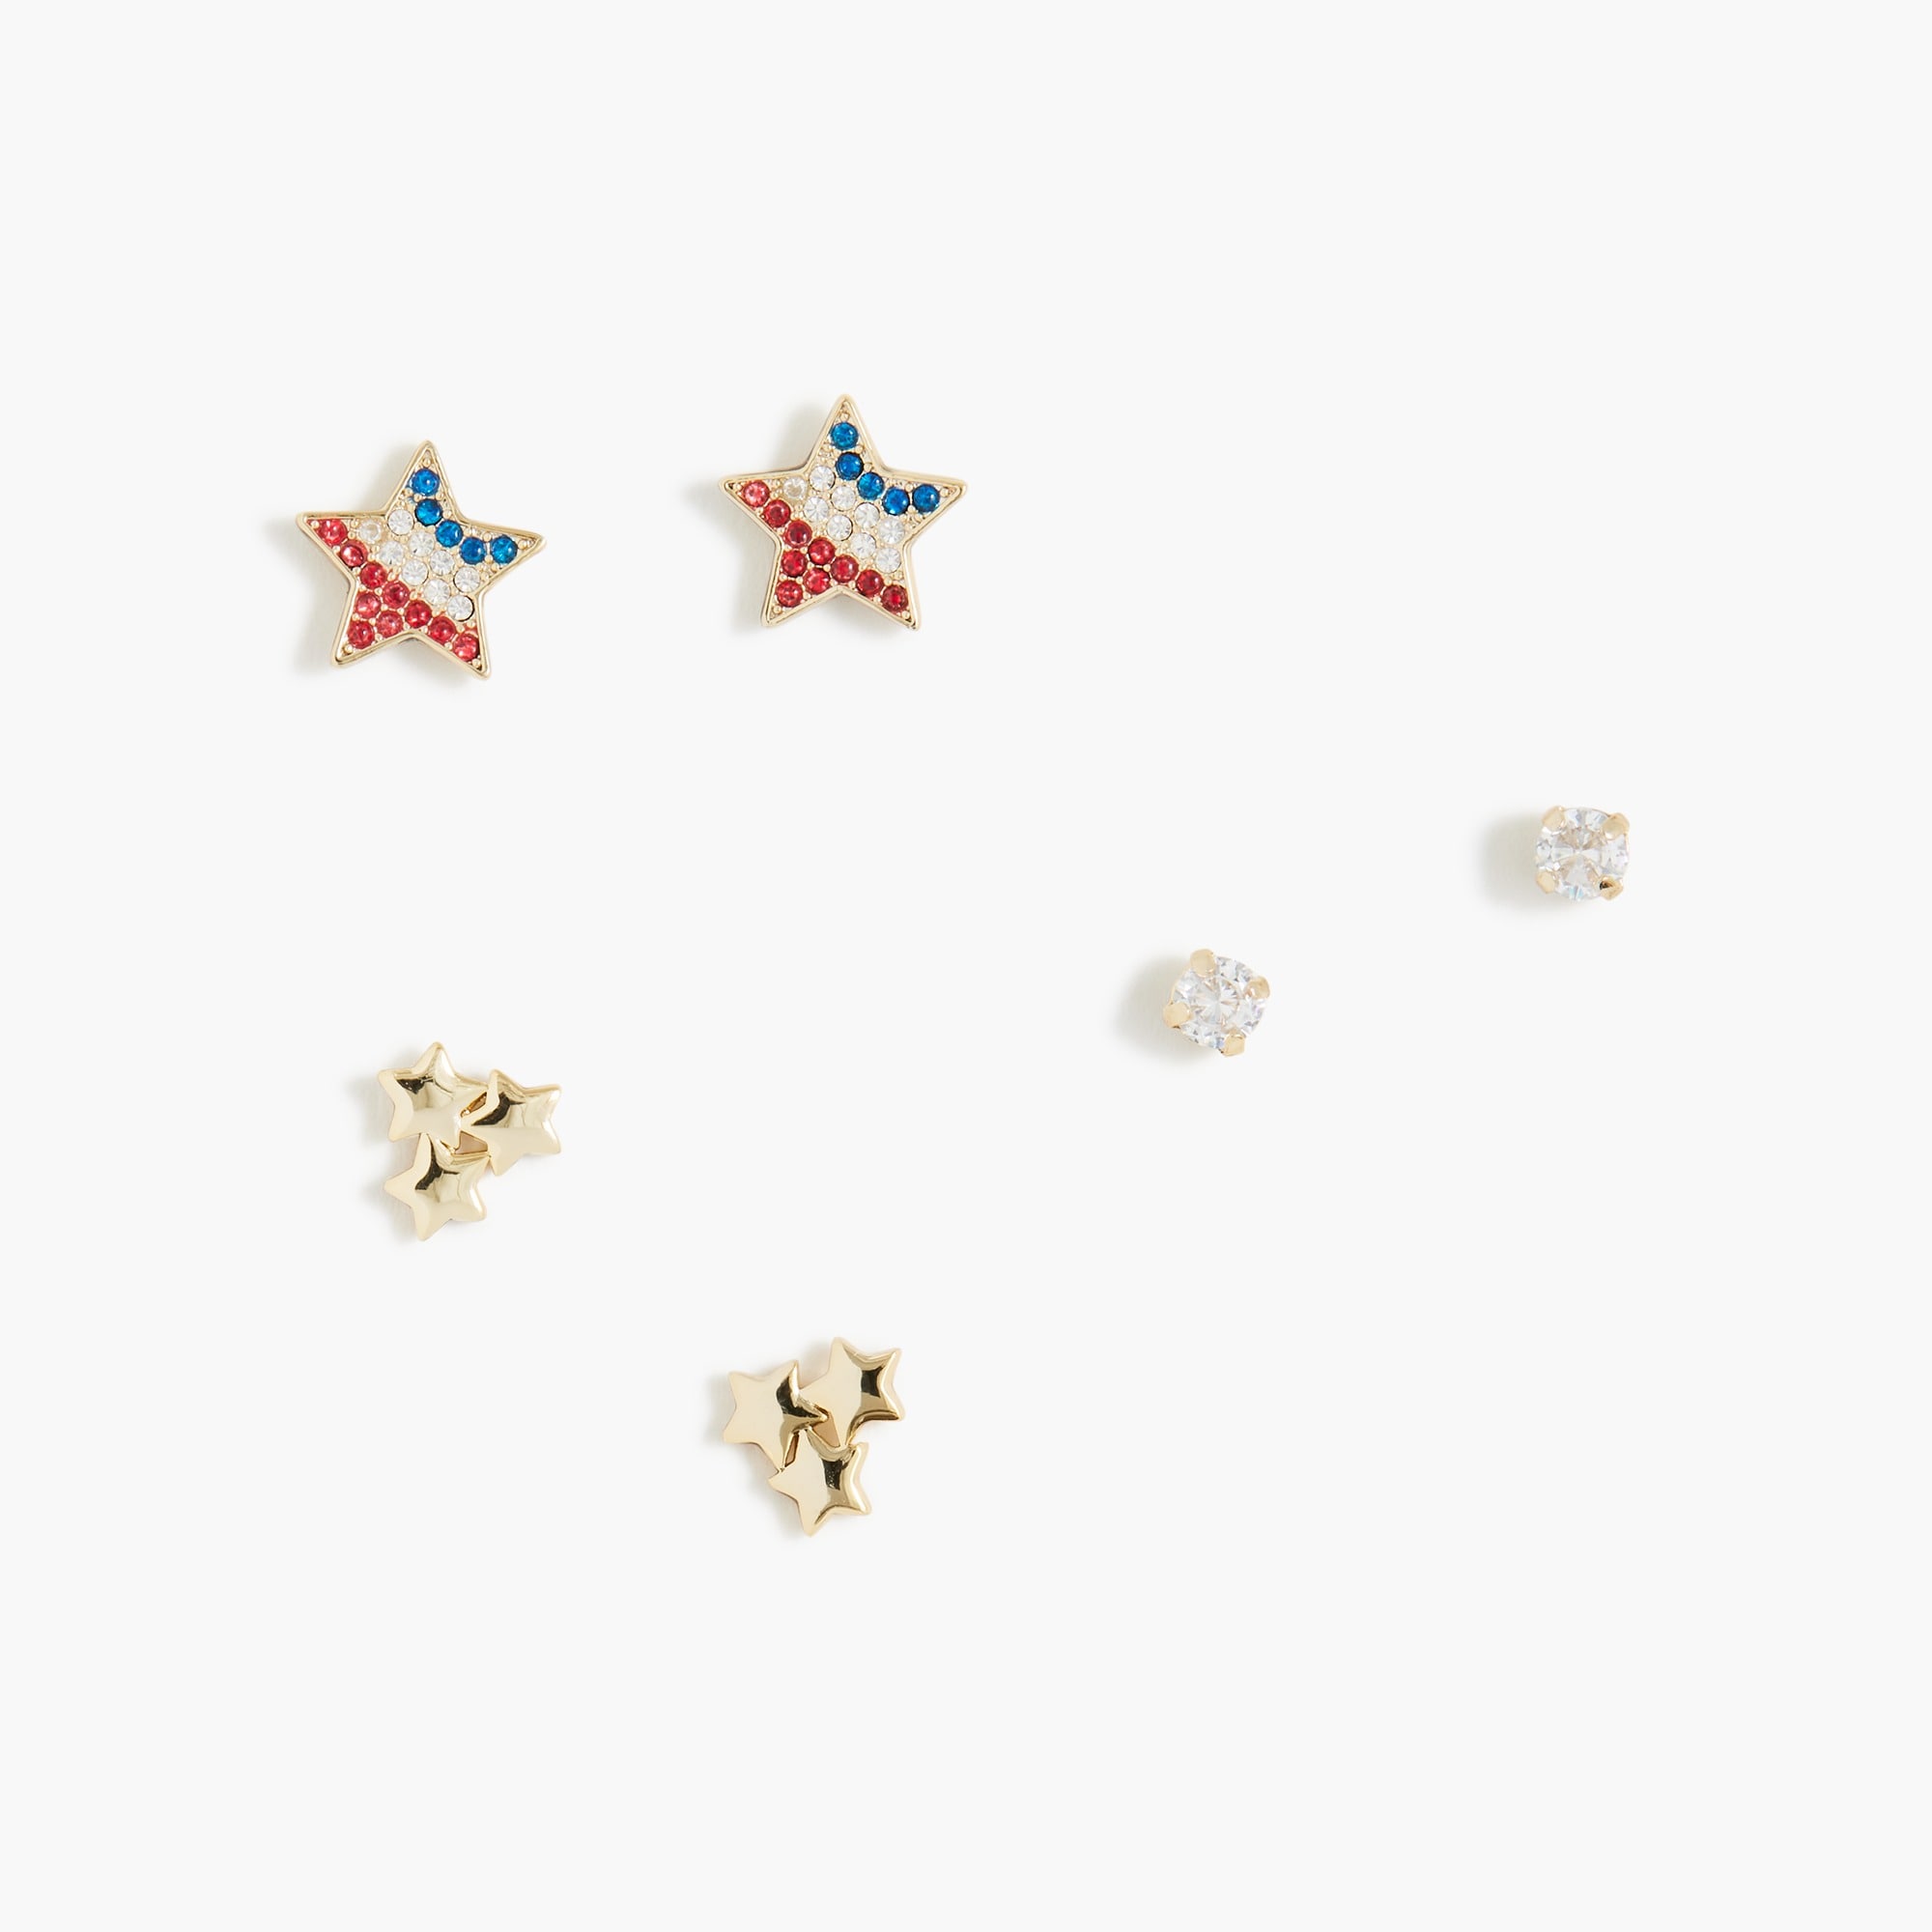  Patriotic stars earrings set